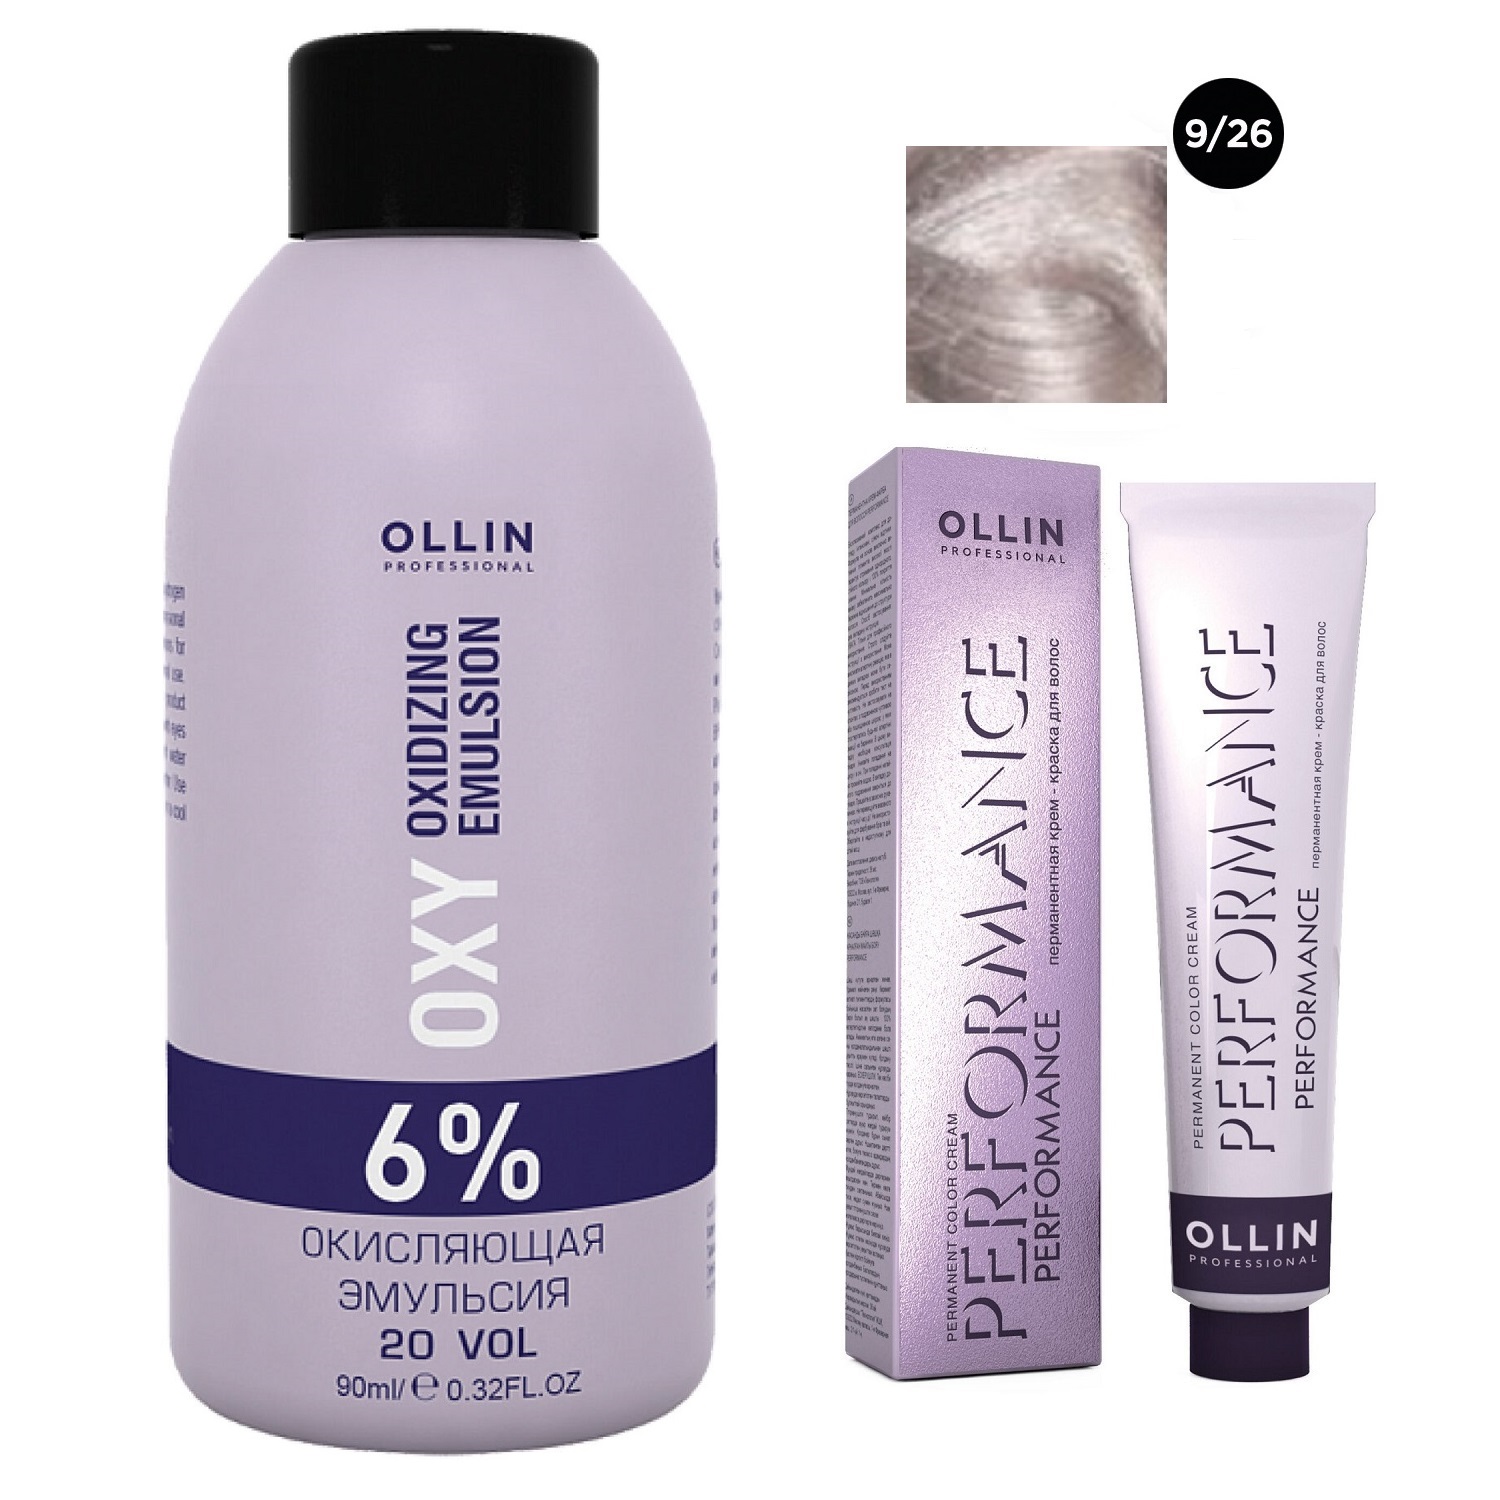 Ollin Professional Набор Перманентная крем-краска для волос Ollin Performance оттенок 9/26 блондин розовый 60 мл + Окисляющая эмульсия Oxy 6% 90 мл (Ollin Professional, Performance)